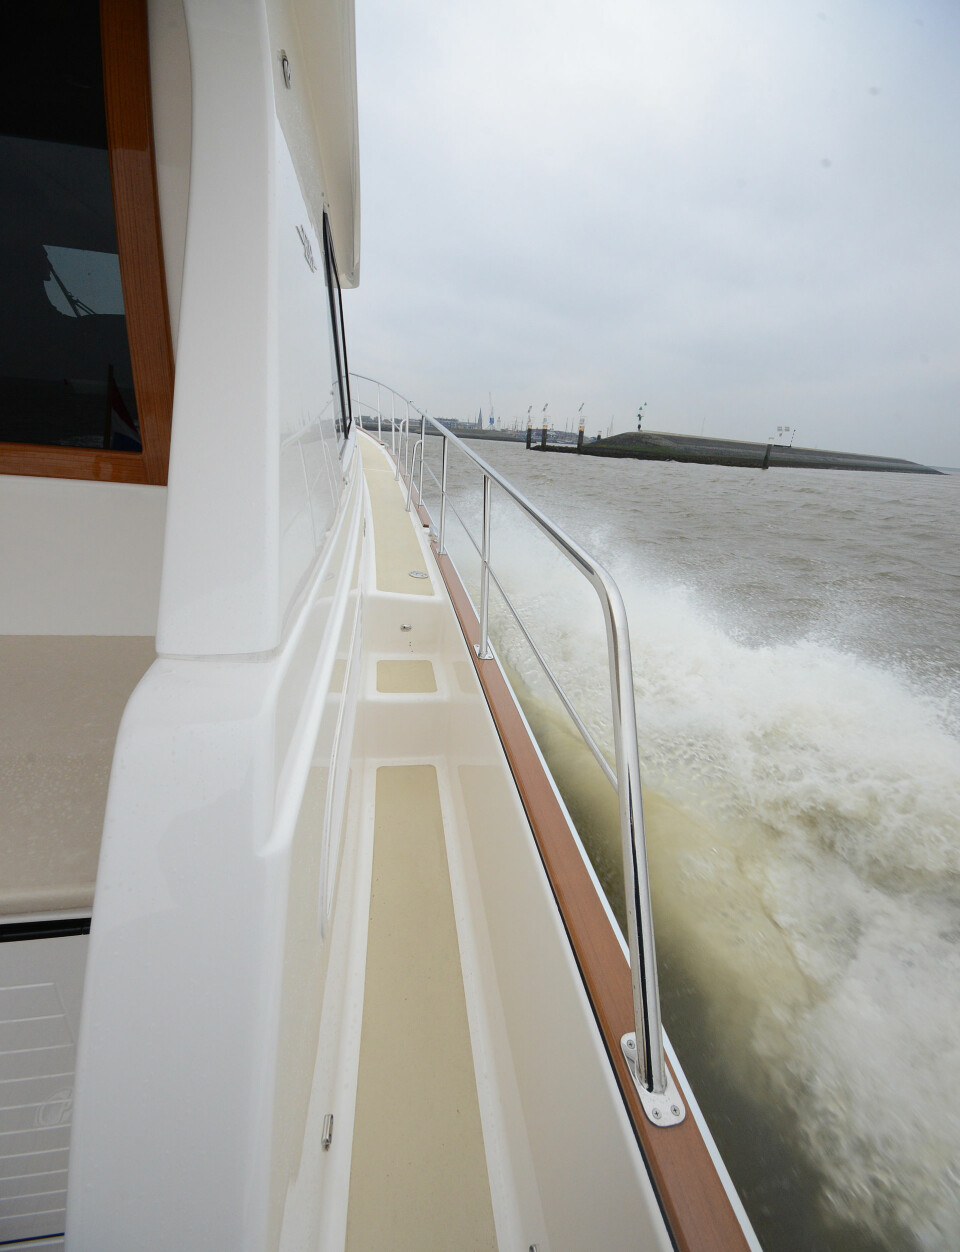 SKANDEKK: Brede sideganger og høye, trygge rekker gjør det lett å bevege seg rundt på båten, også i høy fart.